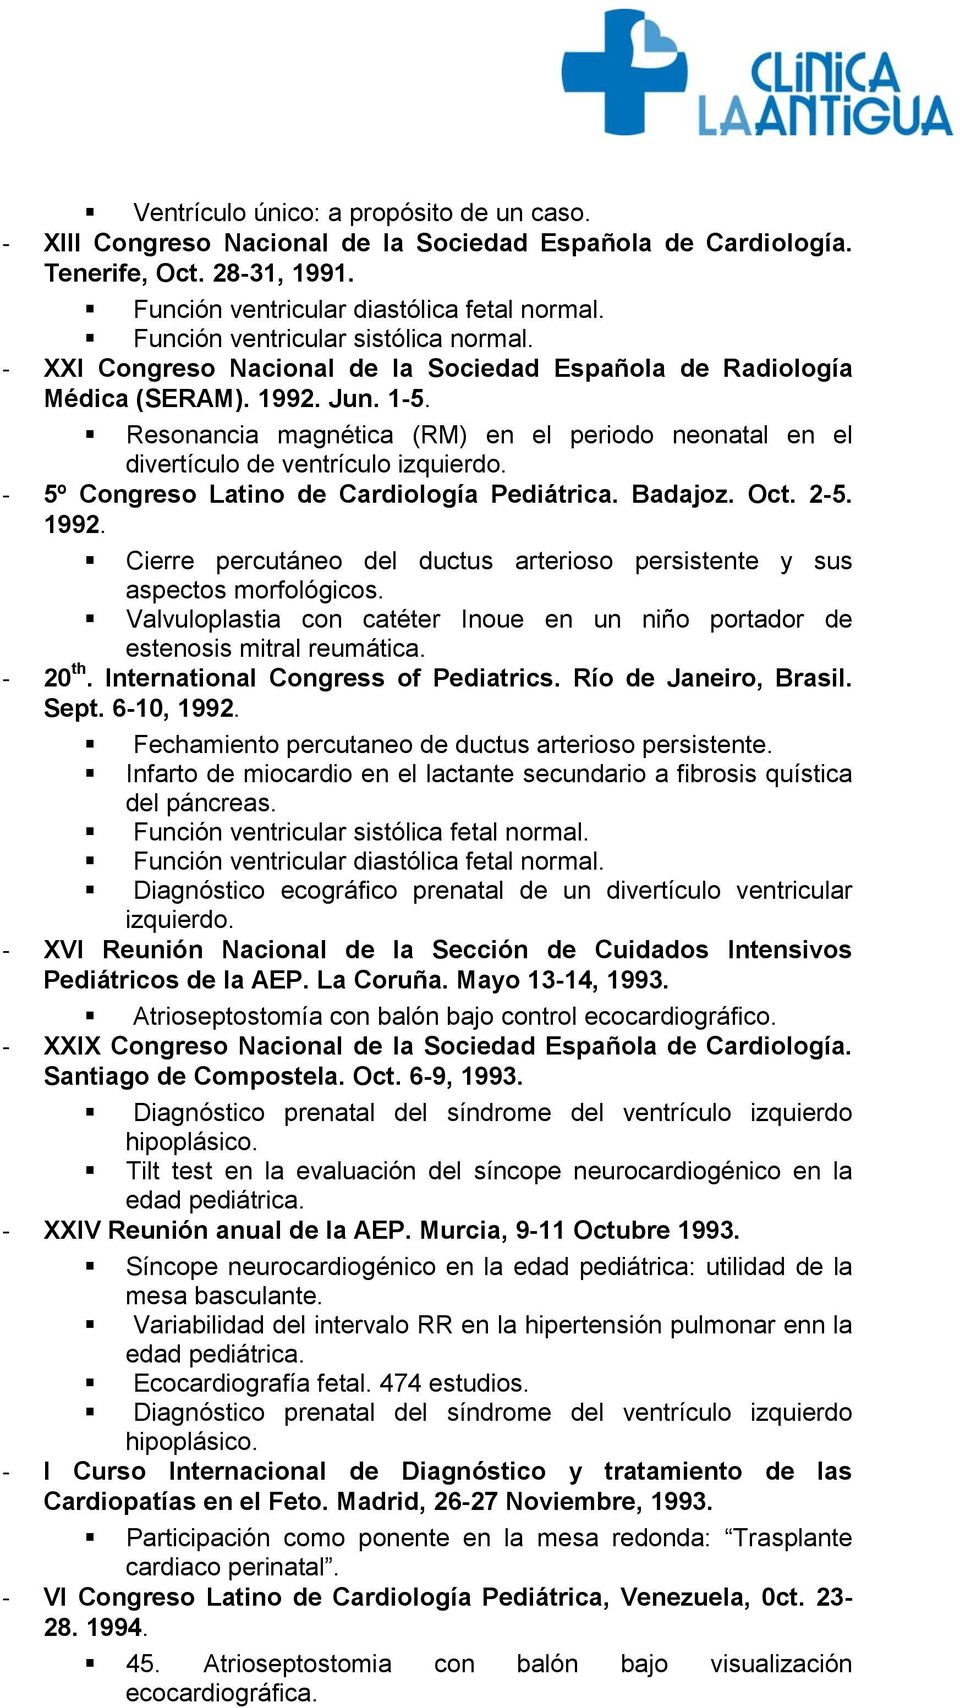 Resonancia magnética (RM) en el periodo neonatal en el divertículo de ventrículo izquierdo. - 5º Congreso Latino de Cardiología Pediátrica. Badajoz. Oct. 2-5. 1992.